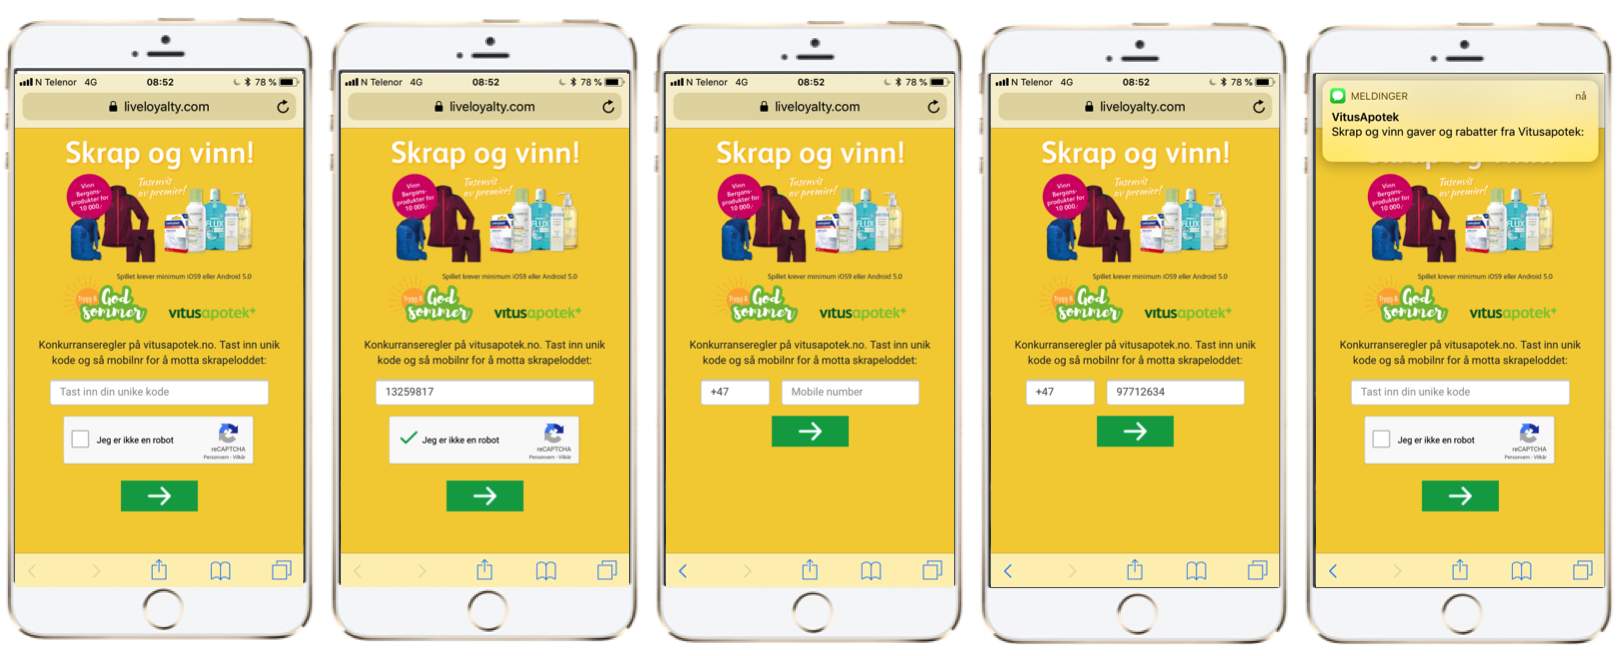 VITUSAPOTEK FAST TRACK CAMPAIGN: digital scratch card via SMS